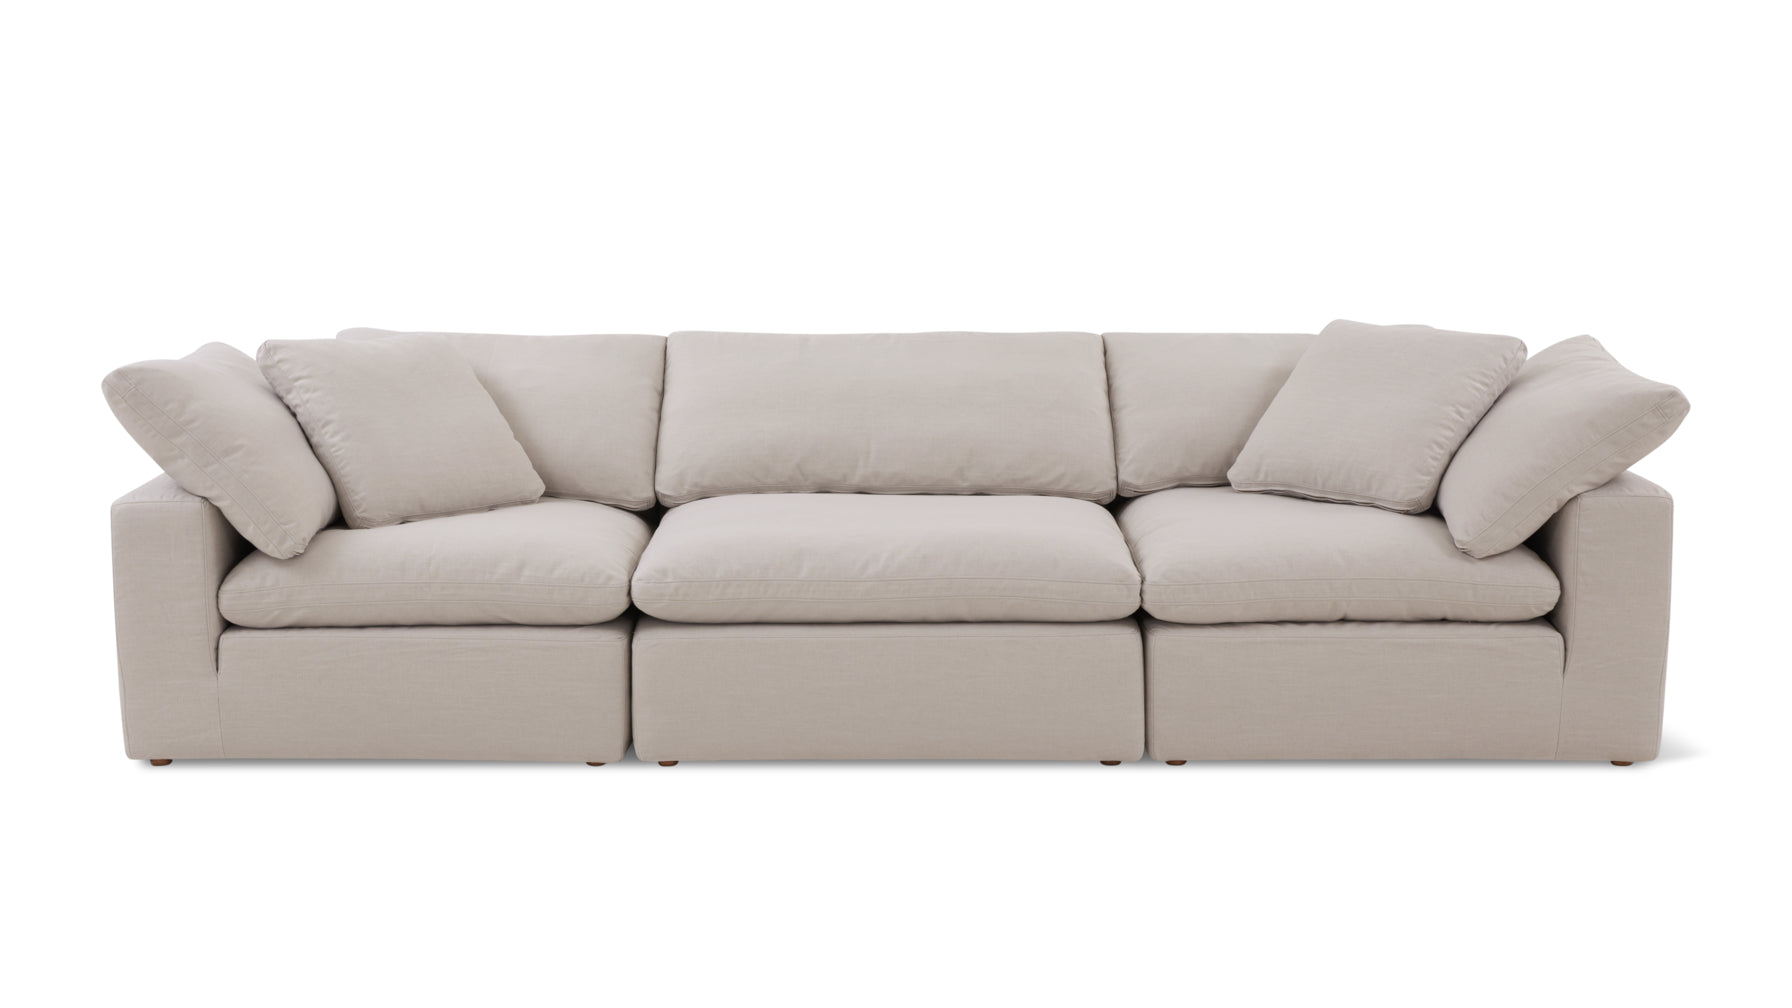 Movie Night™ 3-Piece Modular Sofa, Large, Clay - Image 1